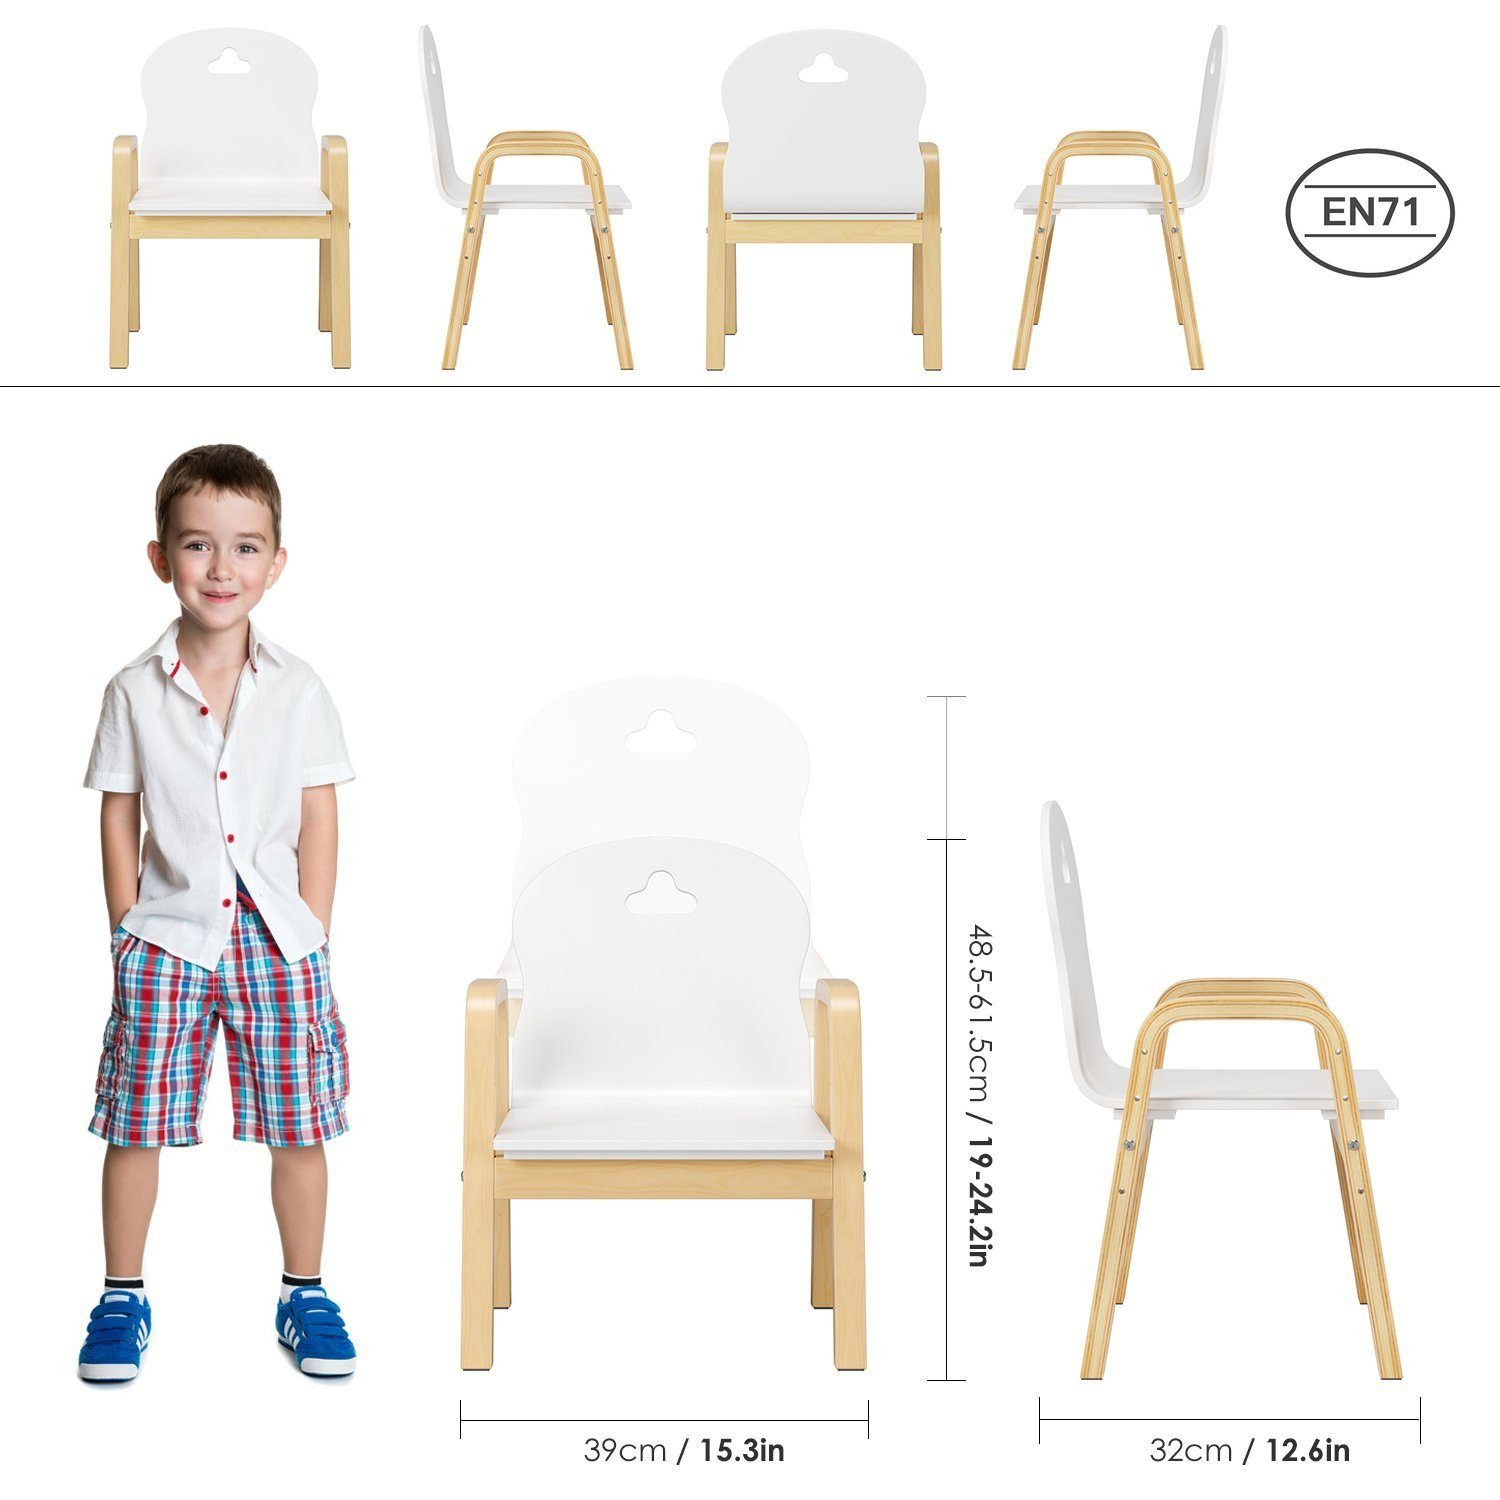 Homfa Stuhl, Kinderstühle 4er Set höhenverstellbar Stühle